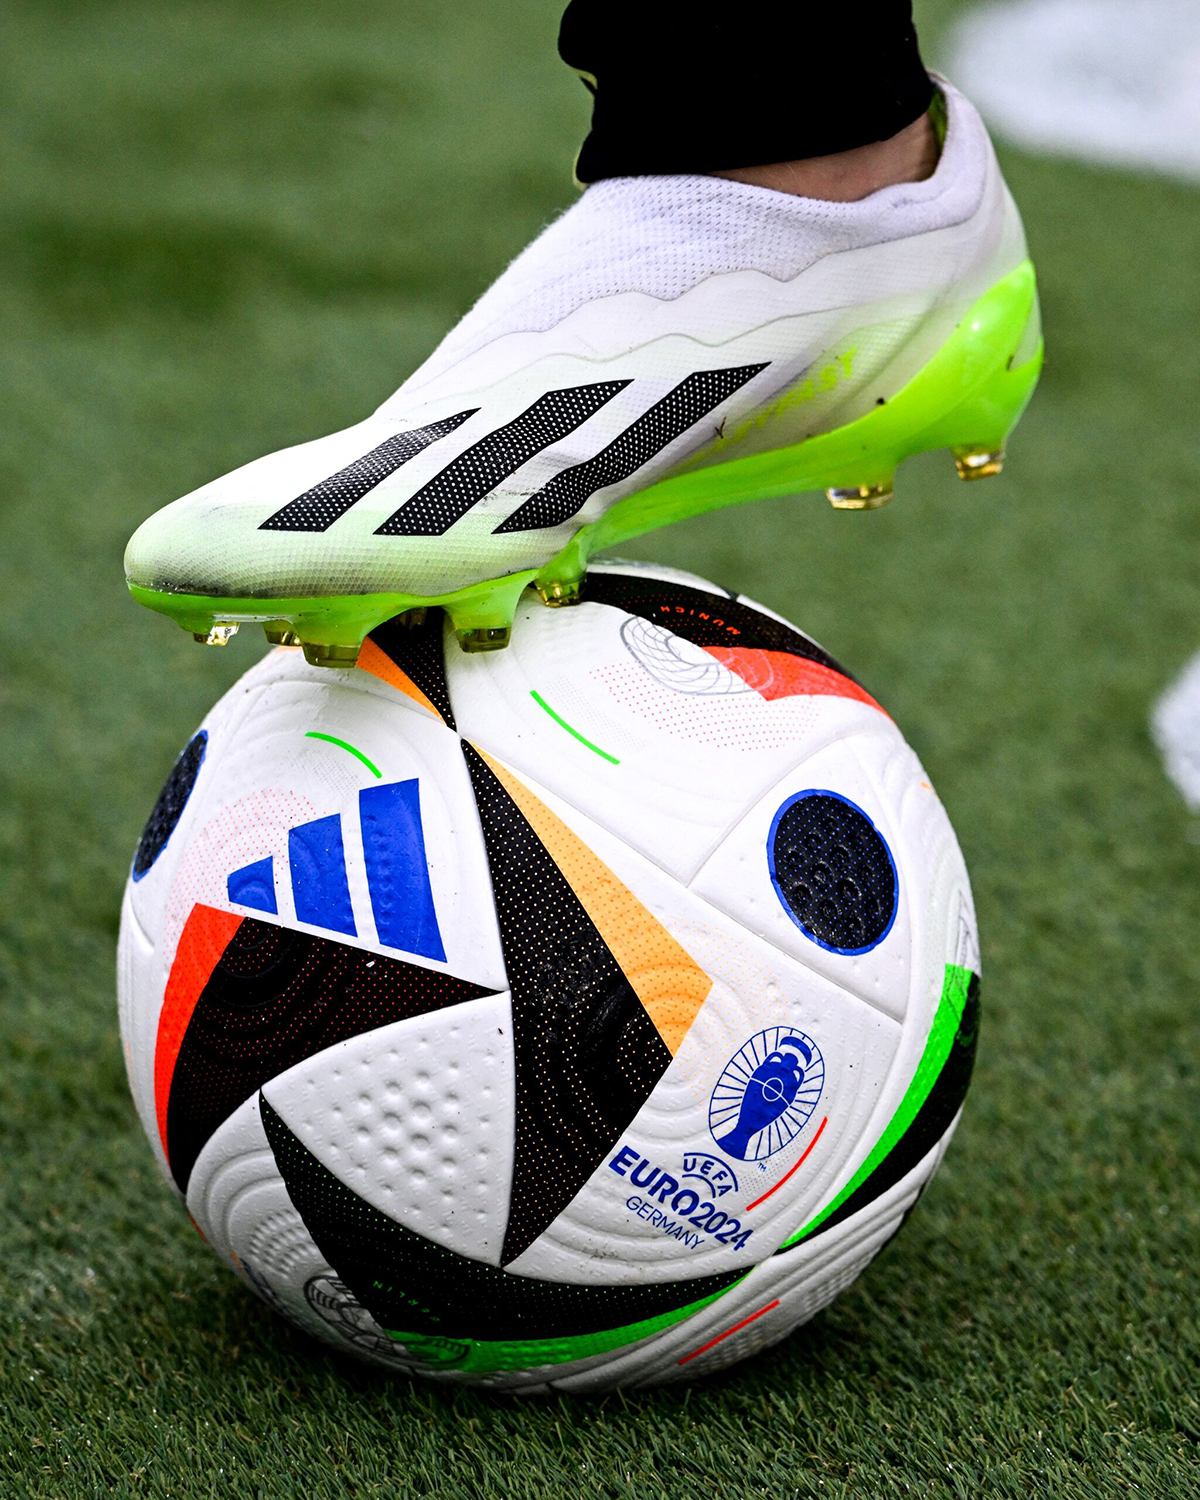 Adidas dévoile un ballon connecté pour détecter les hors-jeu de l